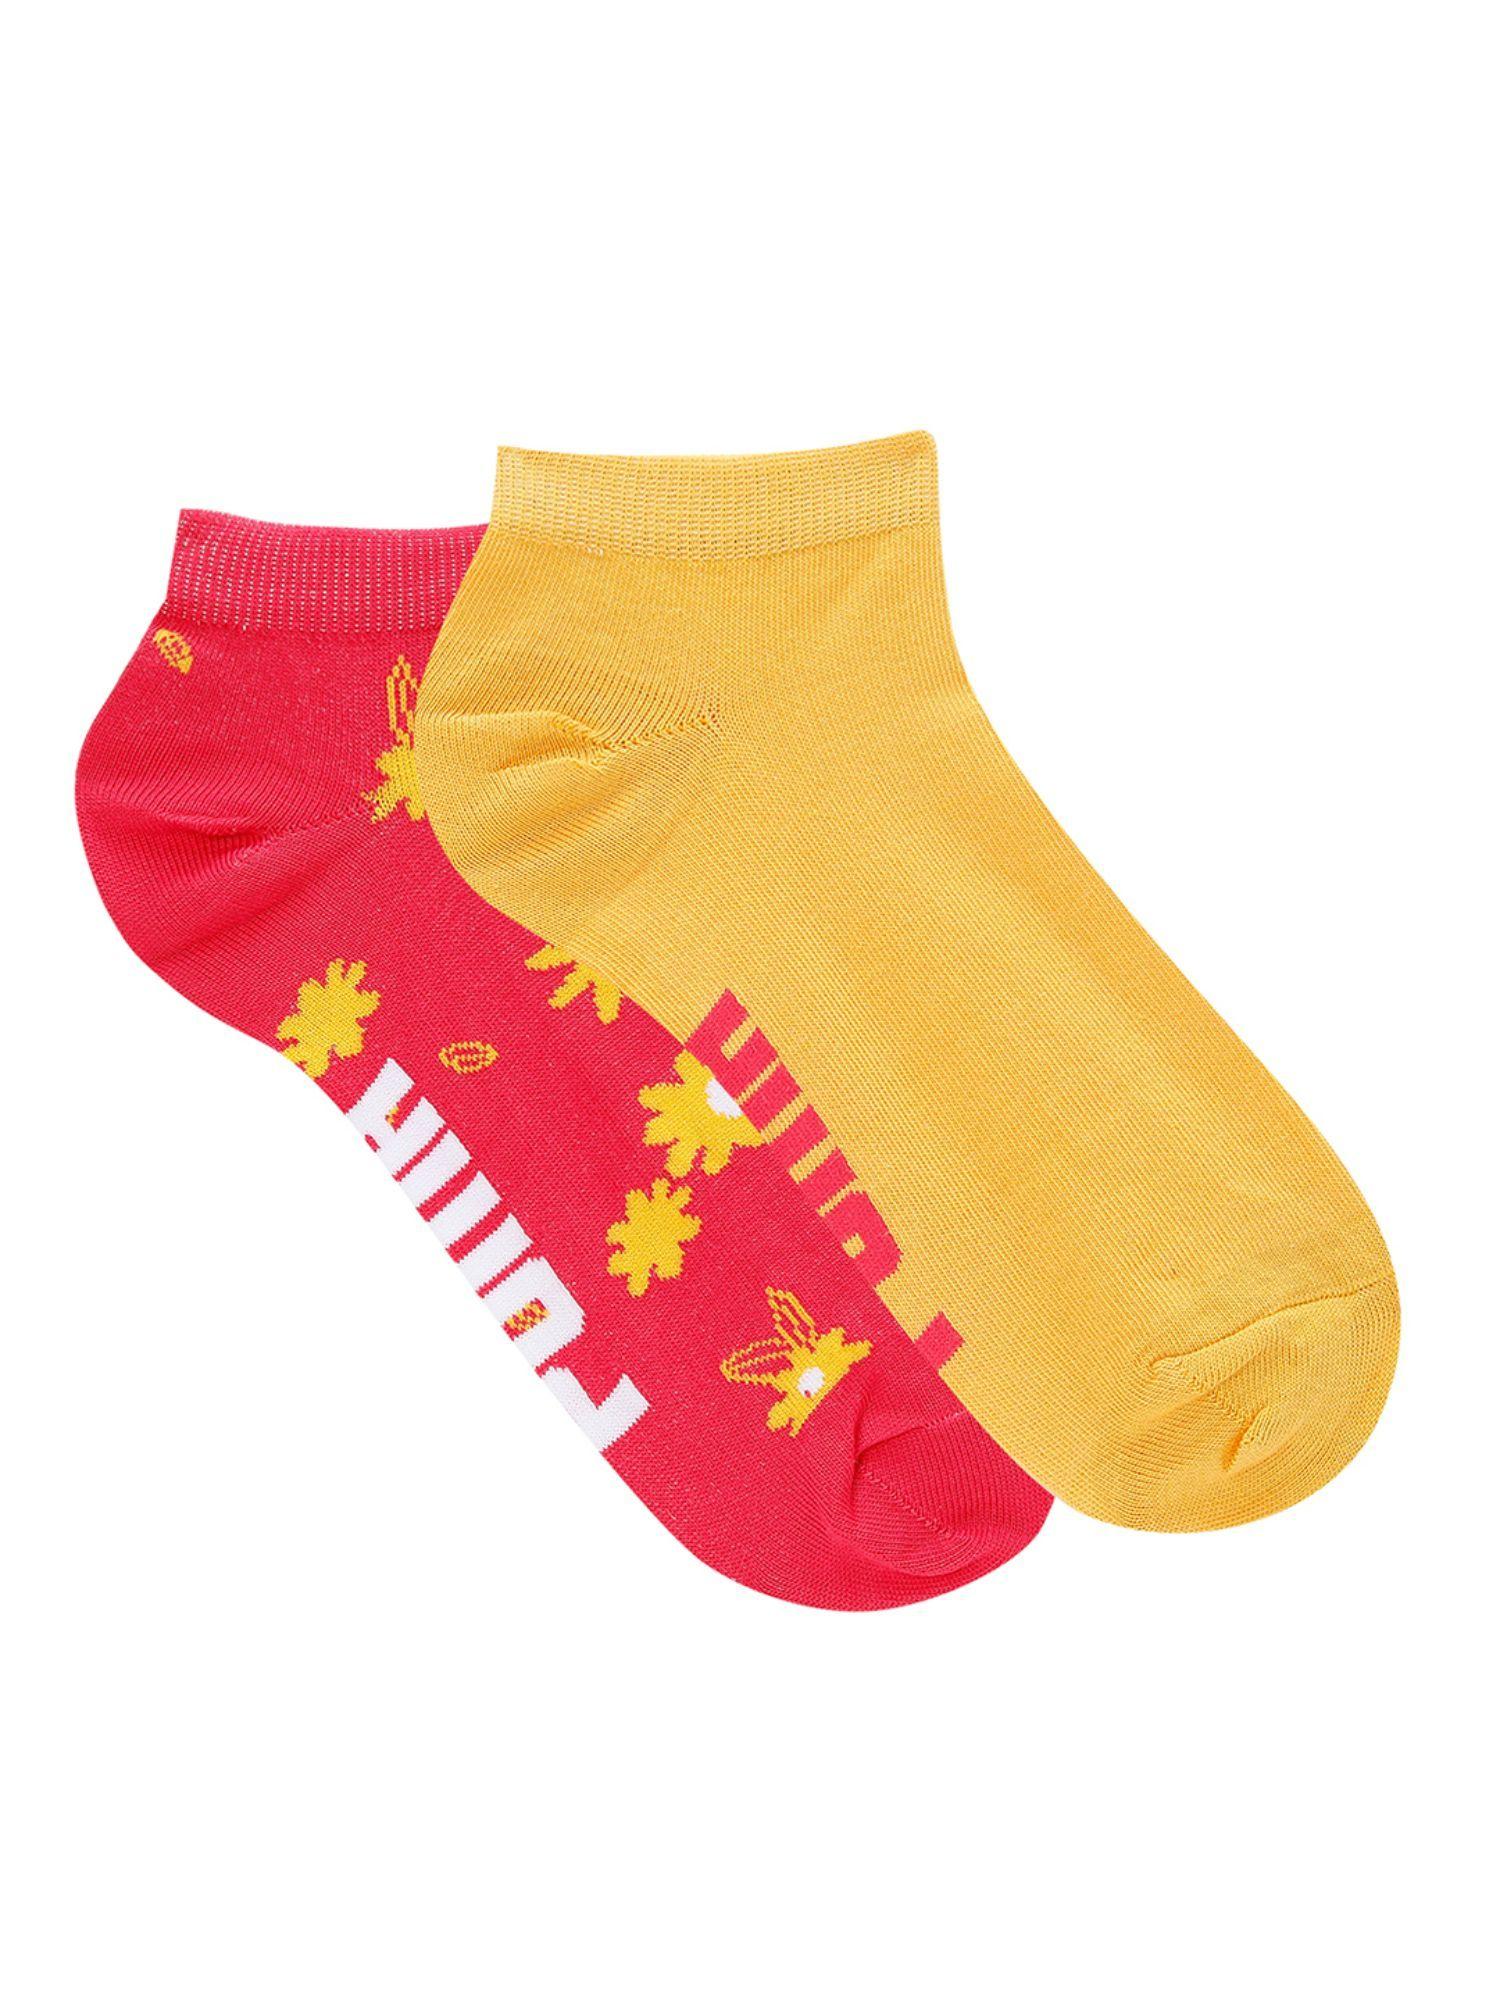 printed-sneaker-unisex-multi-color-socks-(pack-of-2)